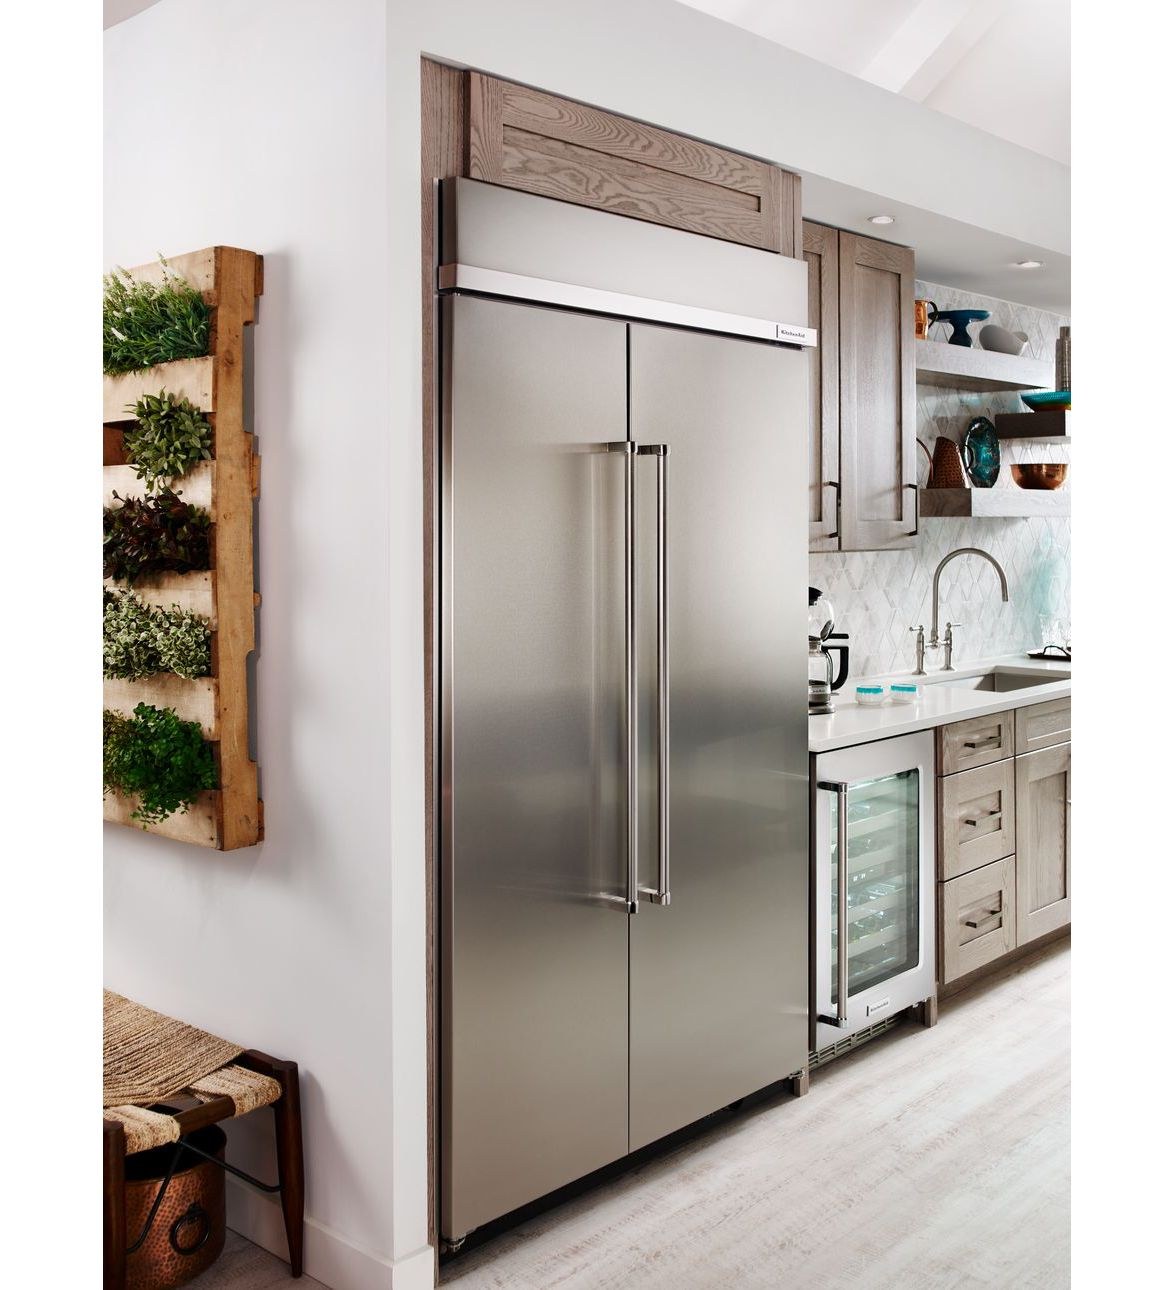 Двухстворчатый холодильник в интерьере кухни (30 фото)